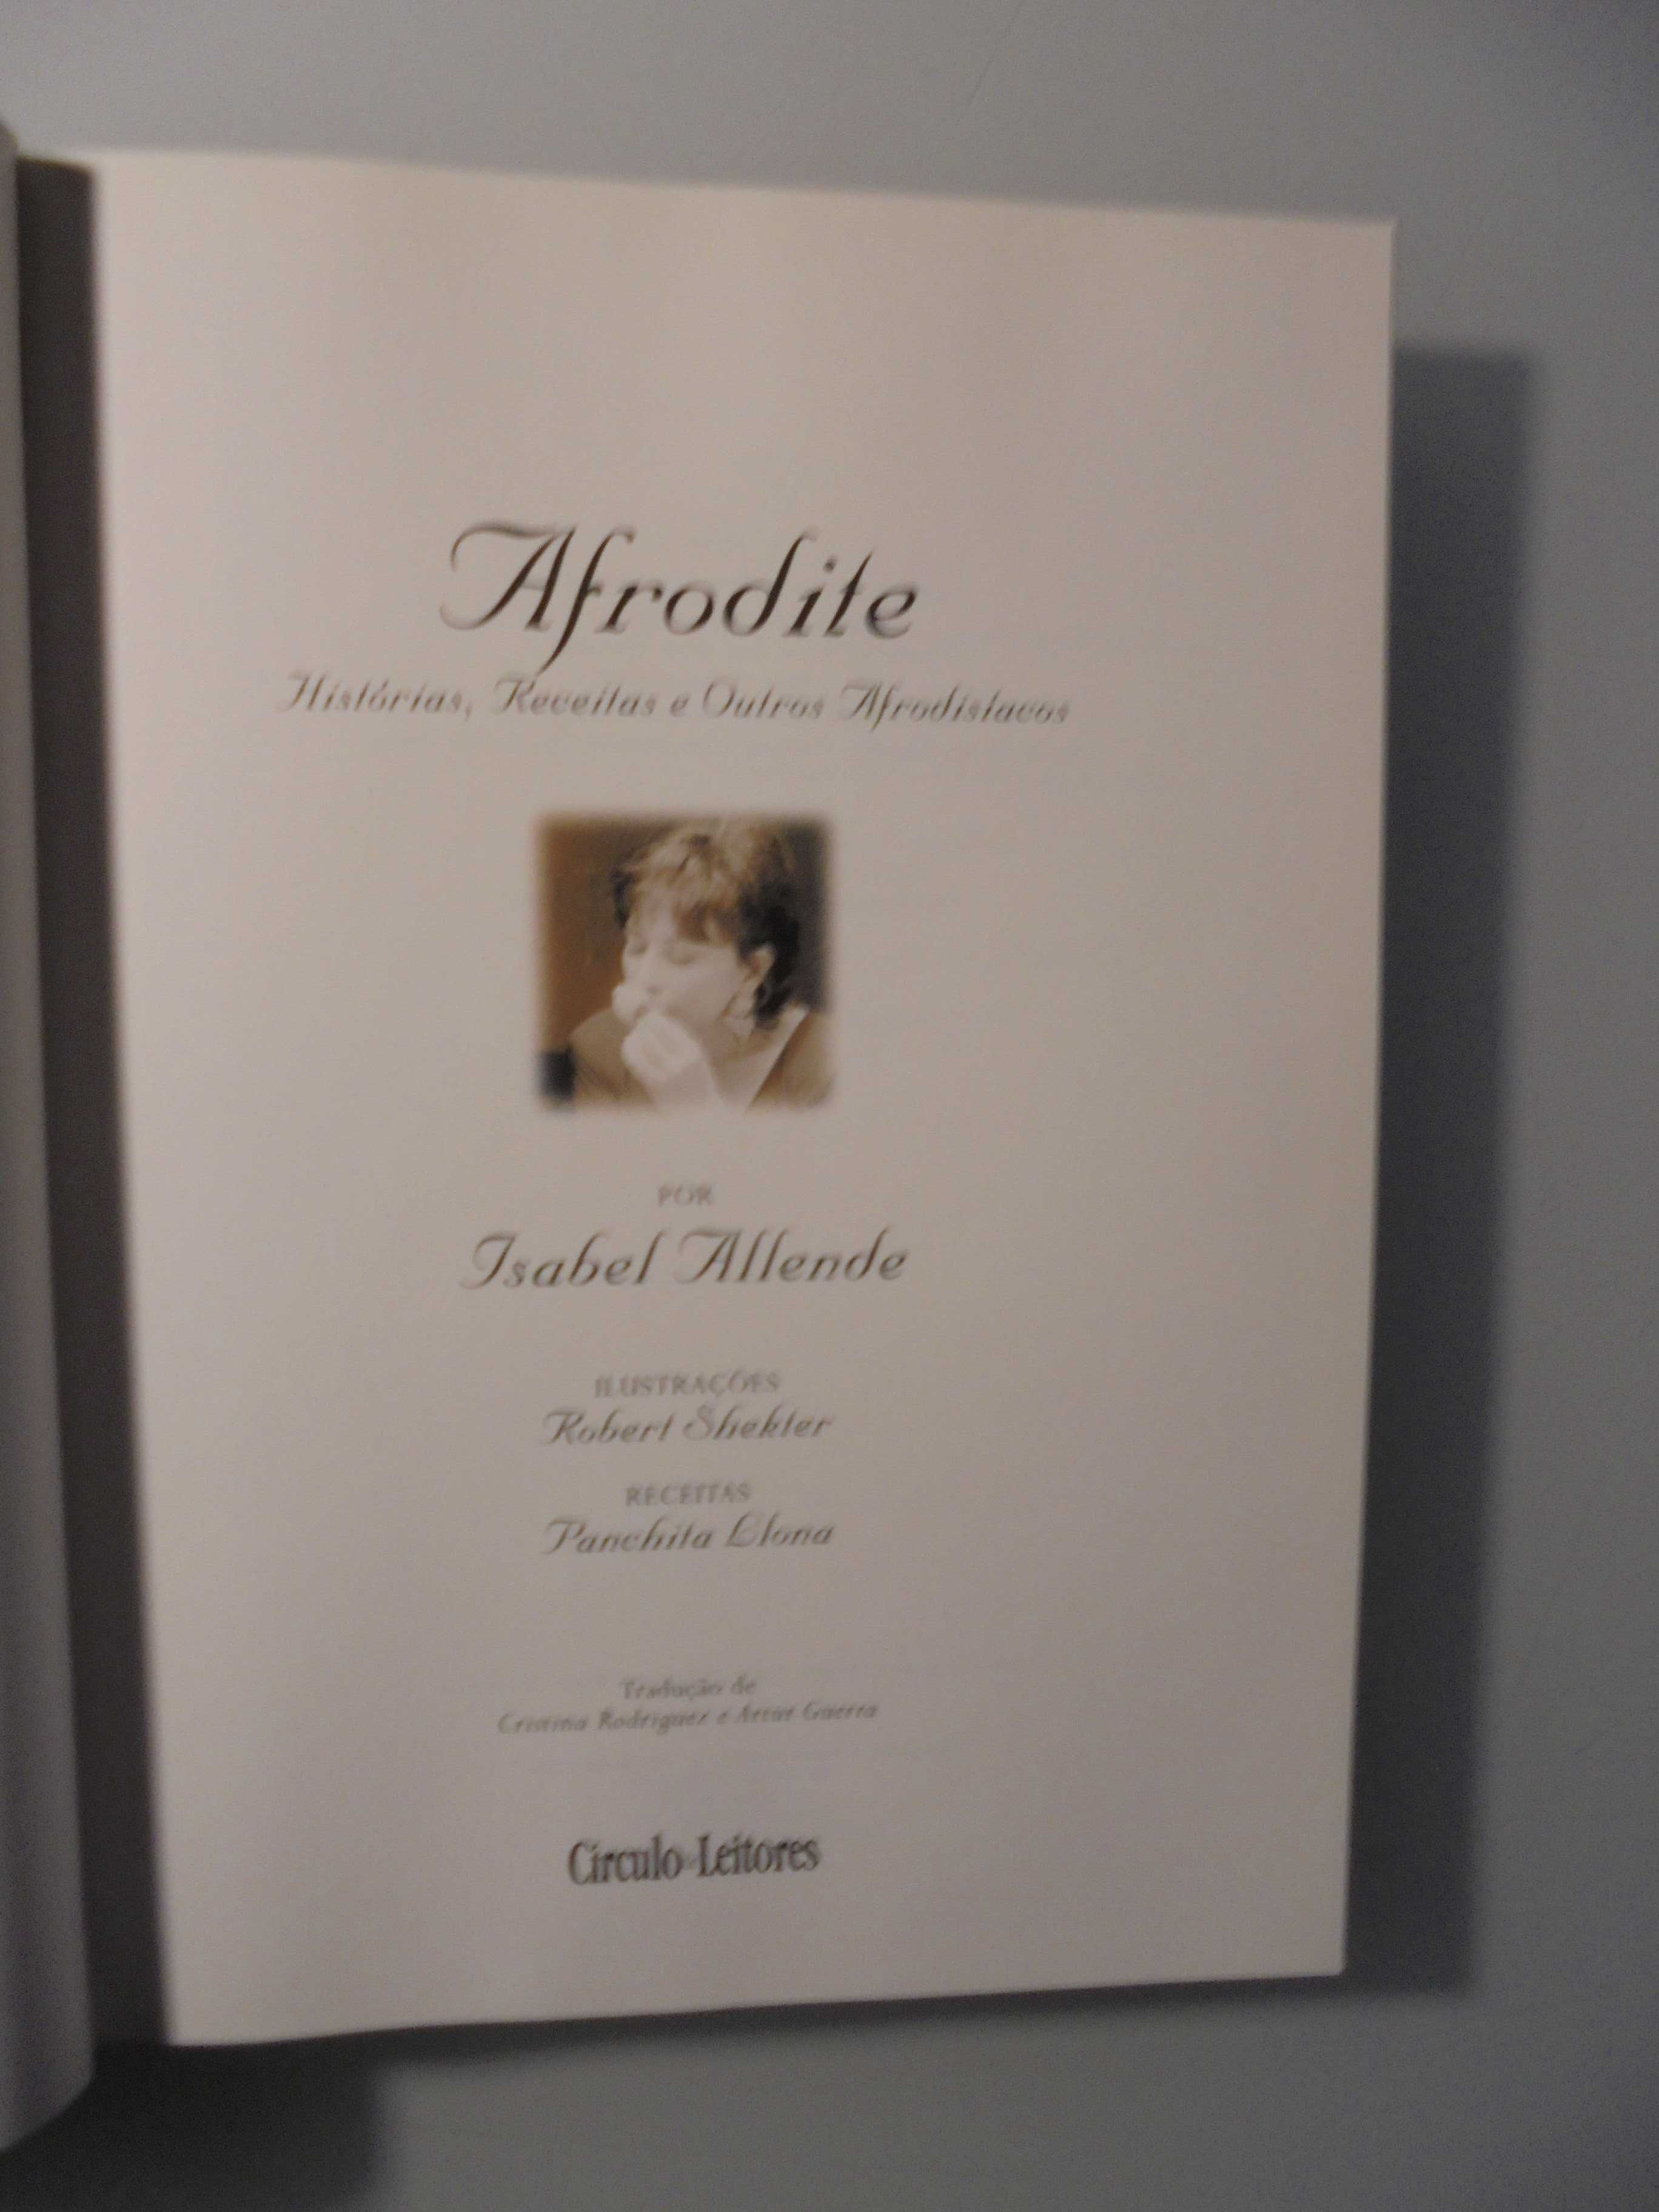 Allende (Isabel);Afrodite-Histórias,Receitas e outros Afrodisíacos